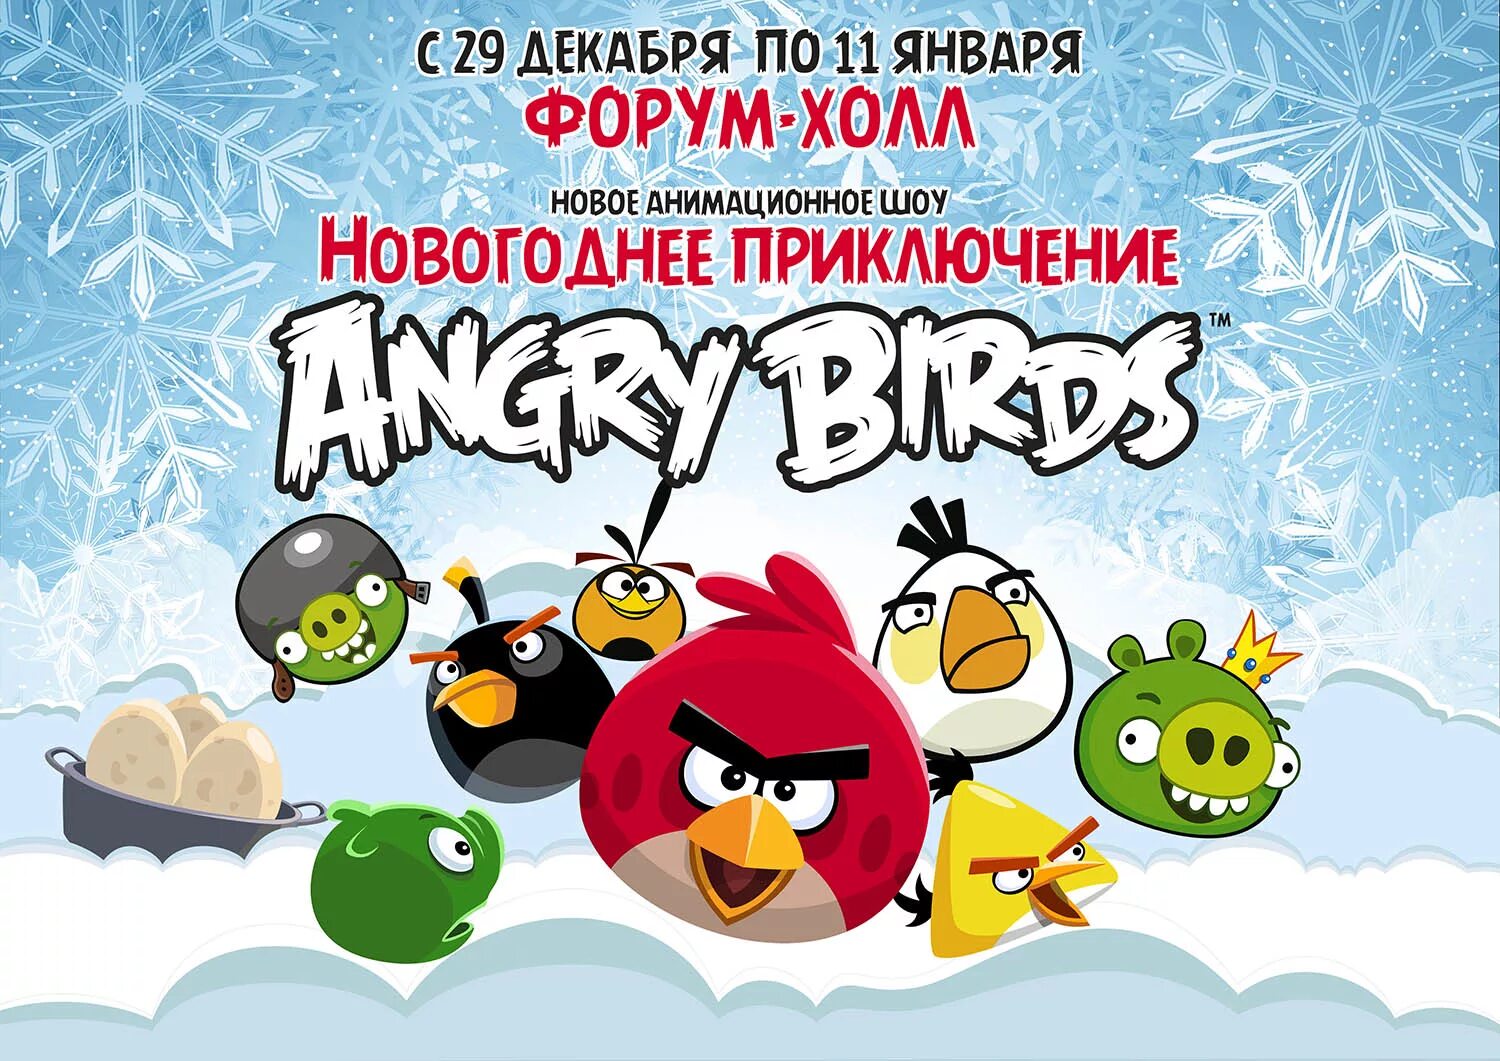 Angry birds новая. Новогодние приключения Angry Birds. Angry Birds с новым годом. Энгри бёрдз новый год. Энгри бердз плакат.